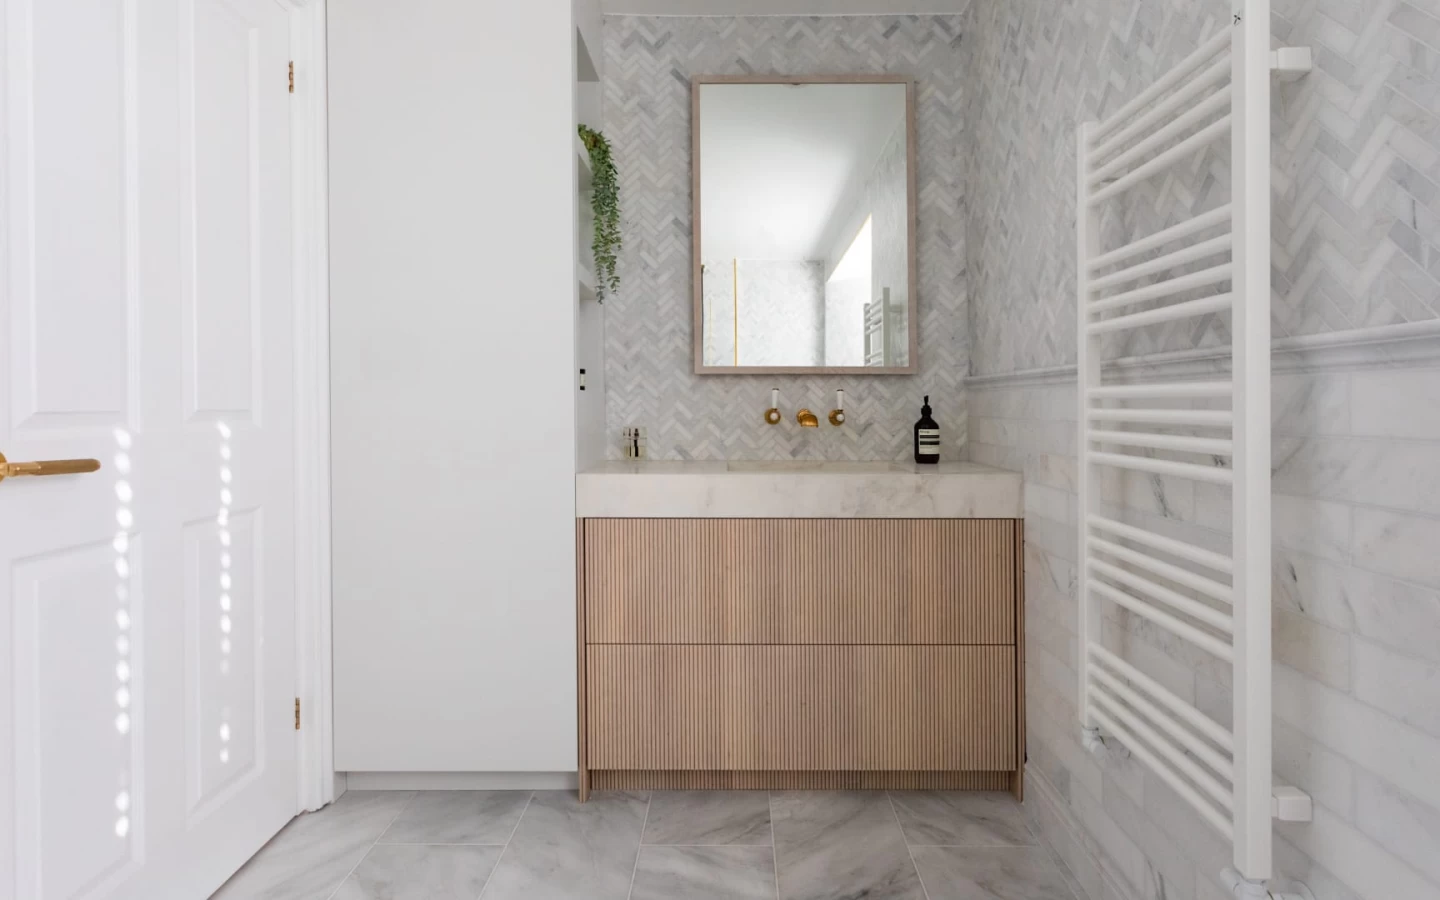 Porcelain stoneware bathroom vanity top by Atlas Plan - Norton Design Project